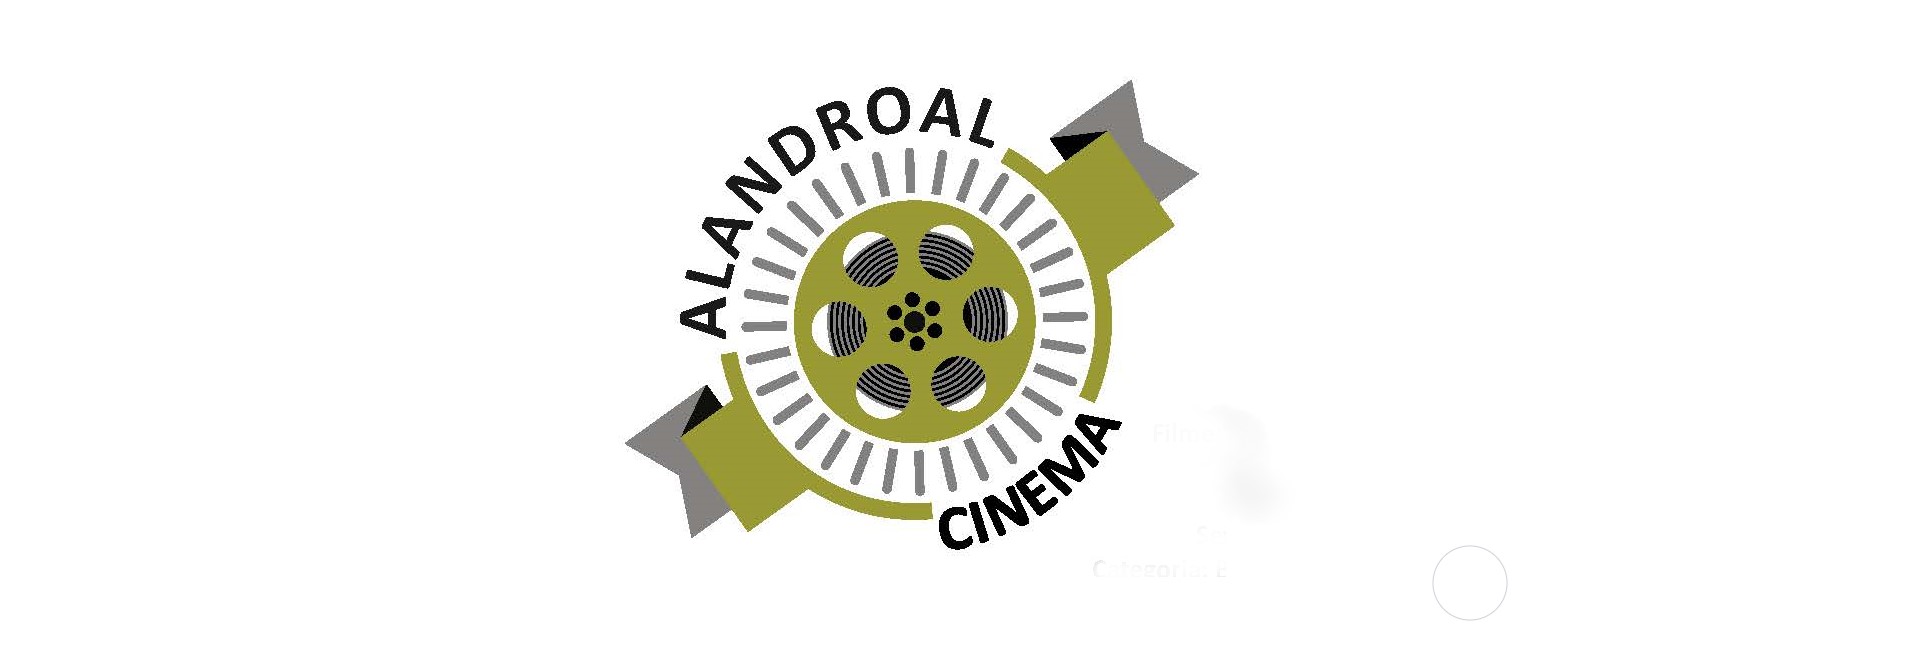 (Português) Cinema Alandroal – maio